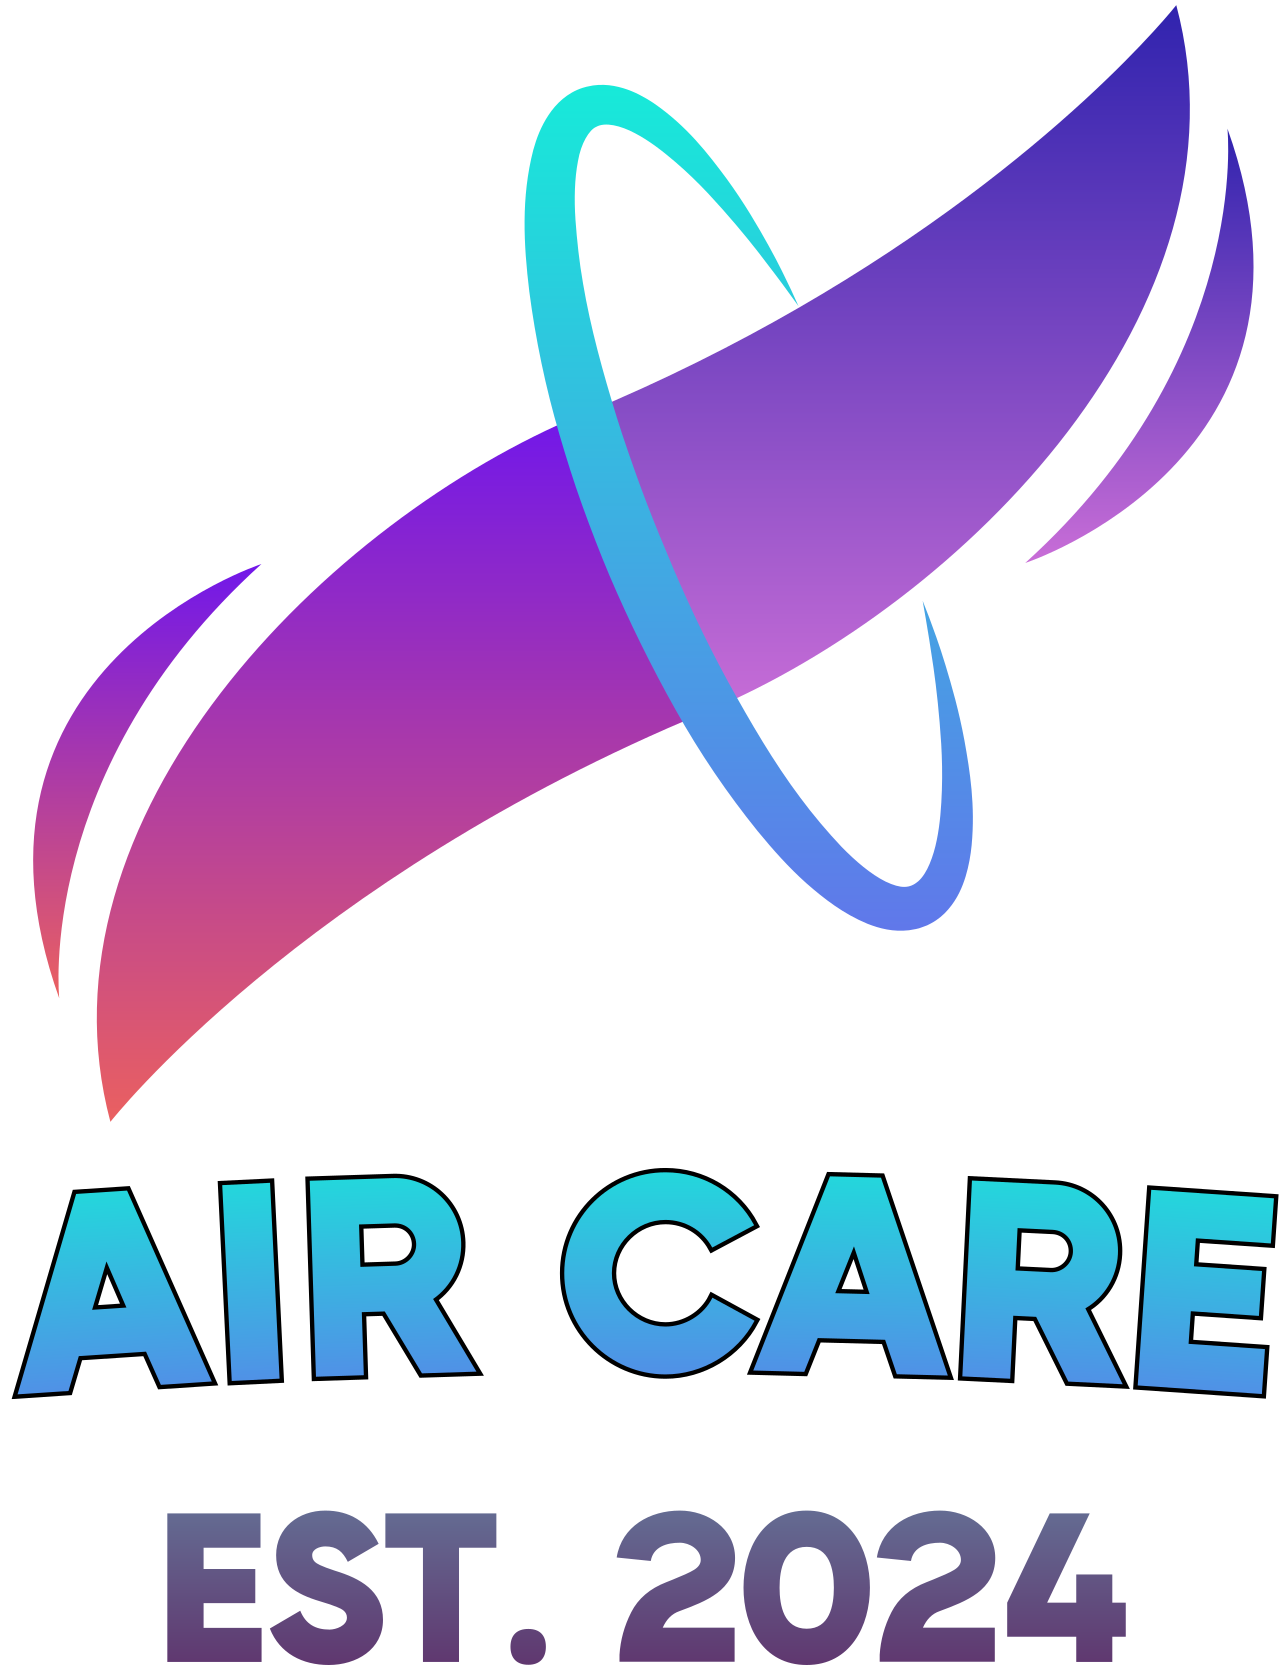 Air Care's logo